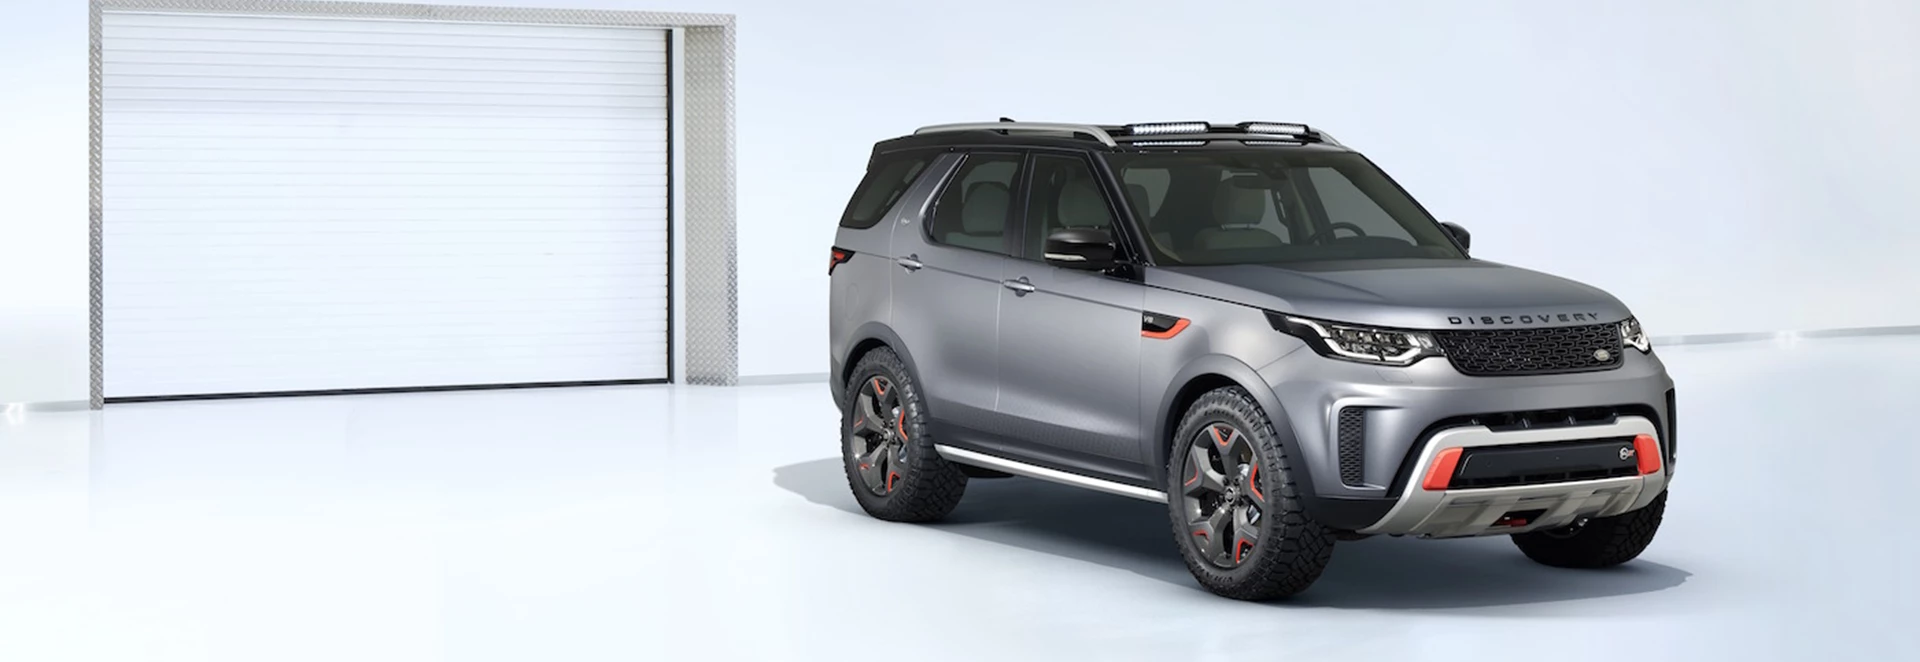 Land Rover reveals Discovery SVX 